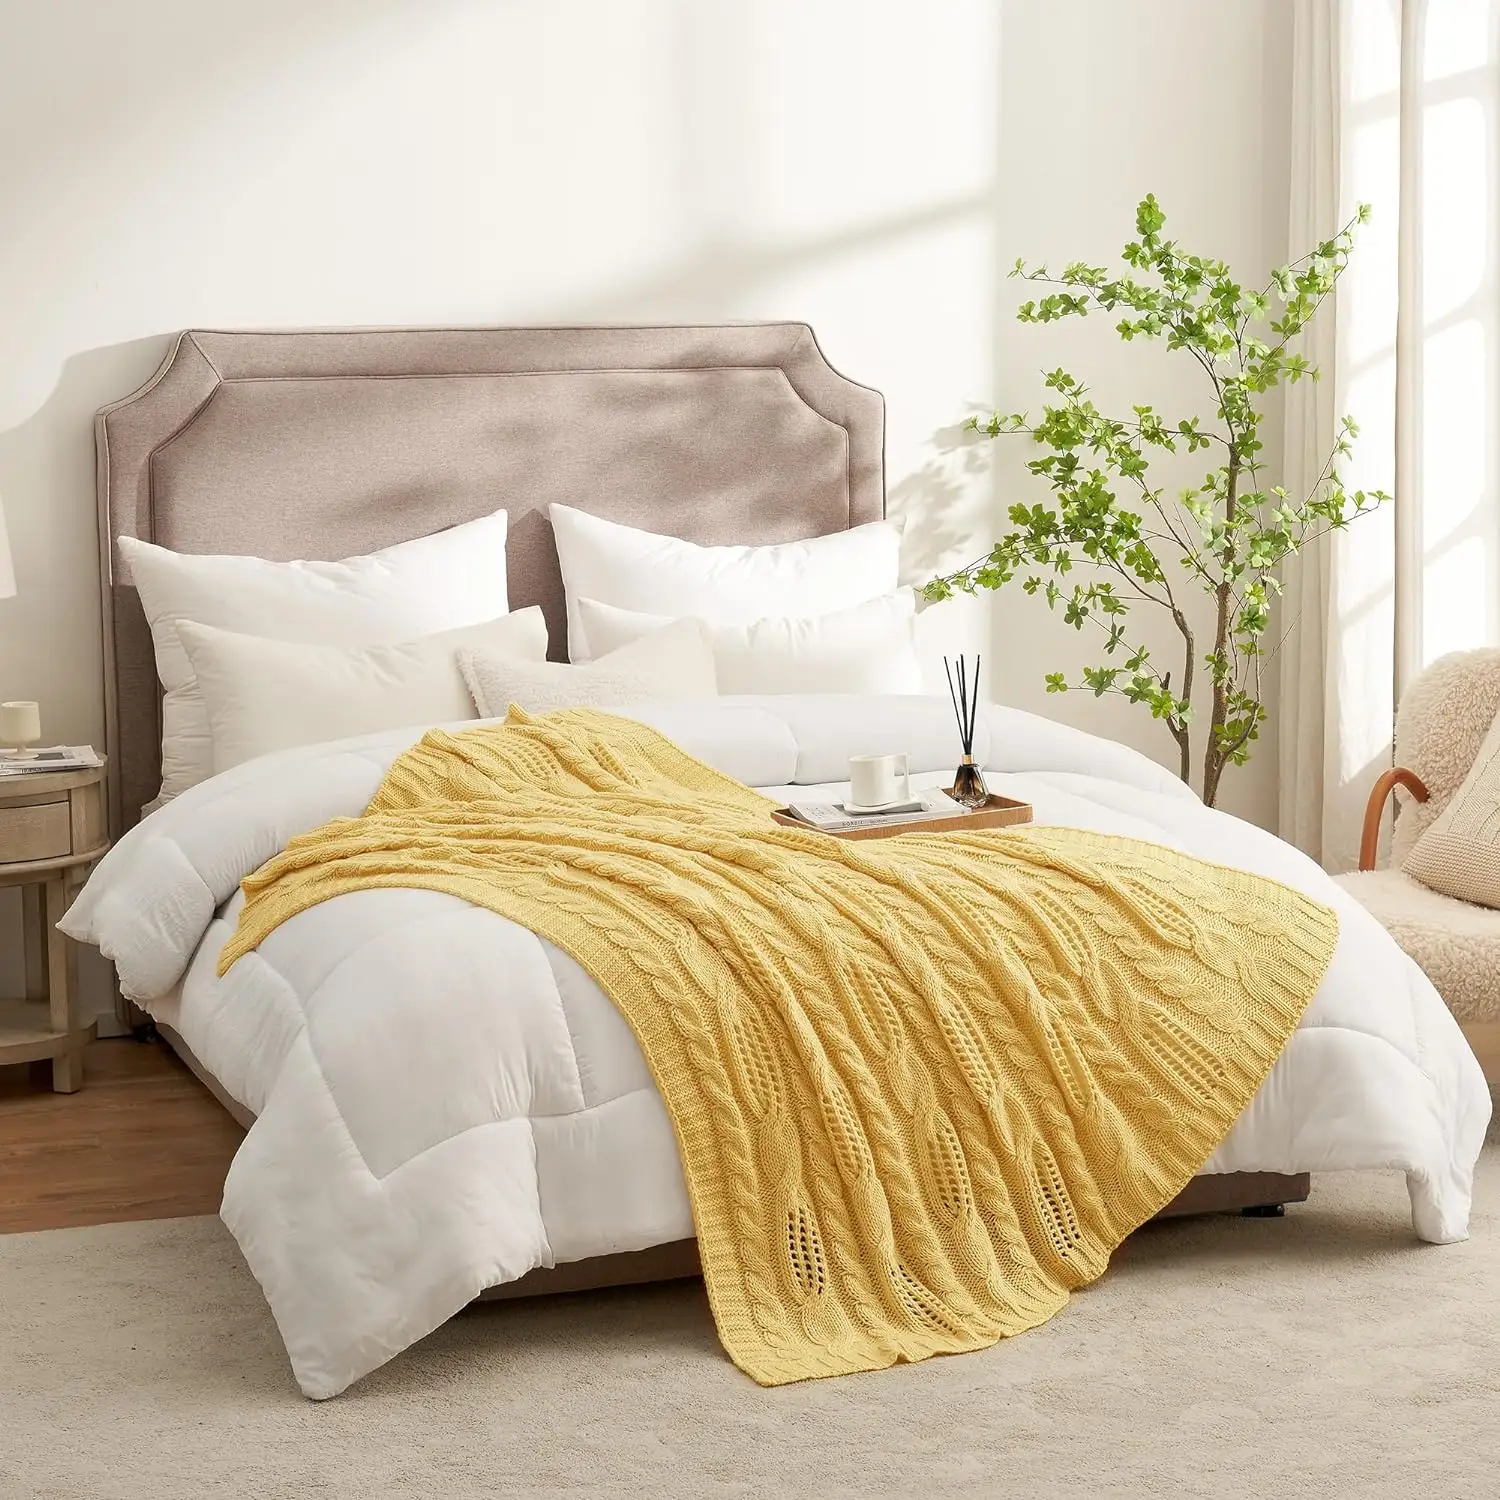 Selimut selendang desain sweter ringan dekoratif musim panas, rajutan kabel Sofa tempat tidur akrilik mewah